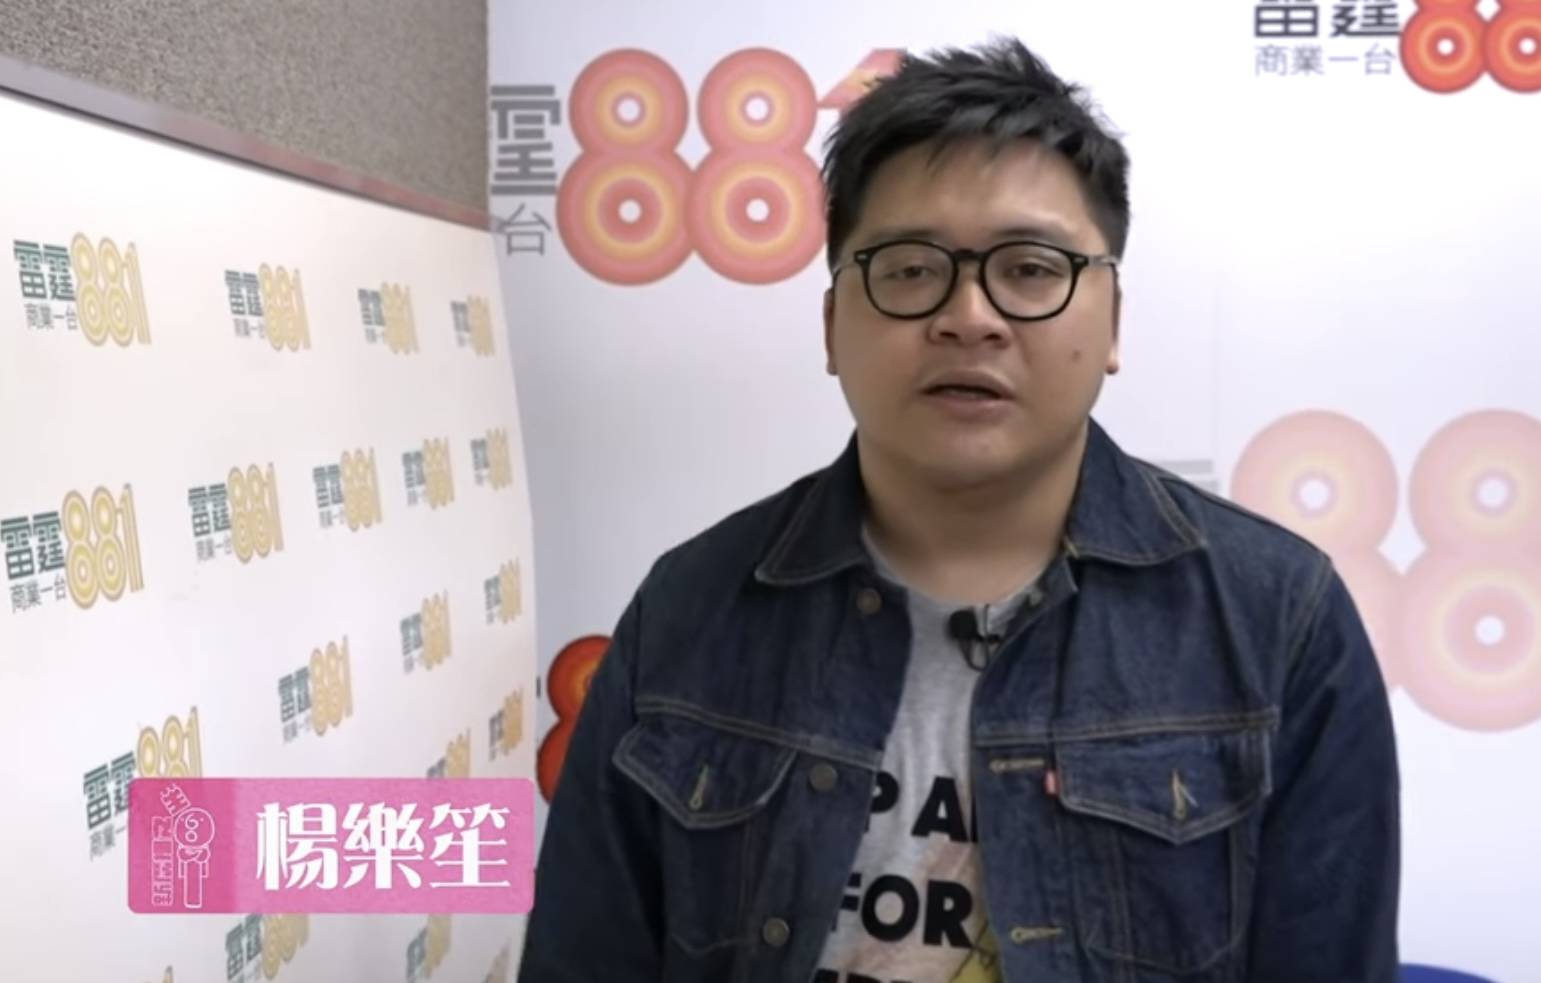 叱咤2023 商台dj 楊樂笙以「真心想知」去問網民投選尹光的原因。